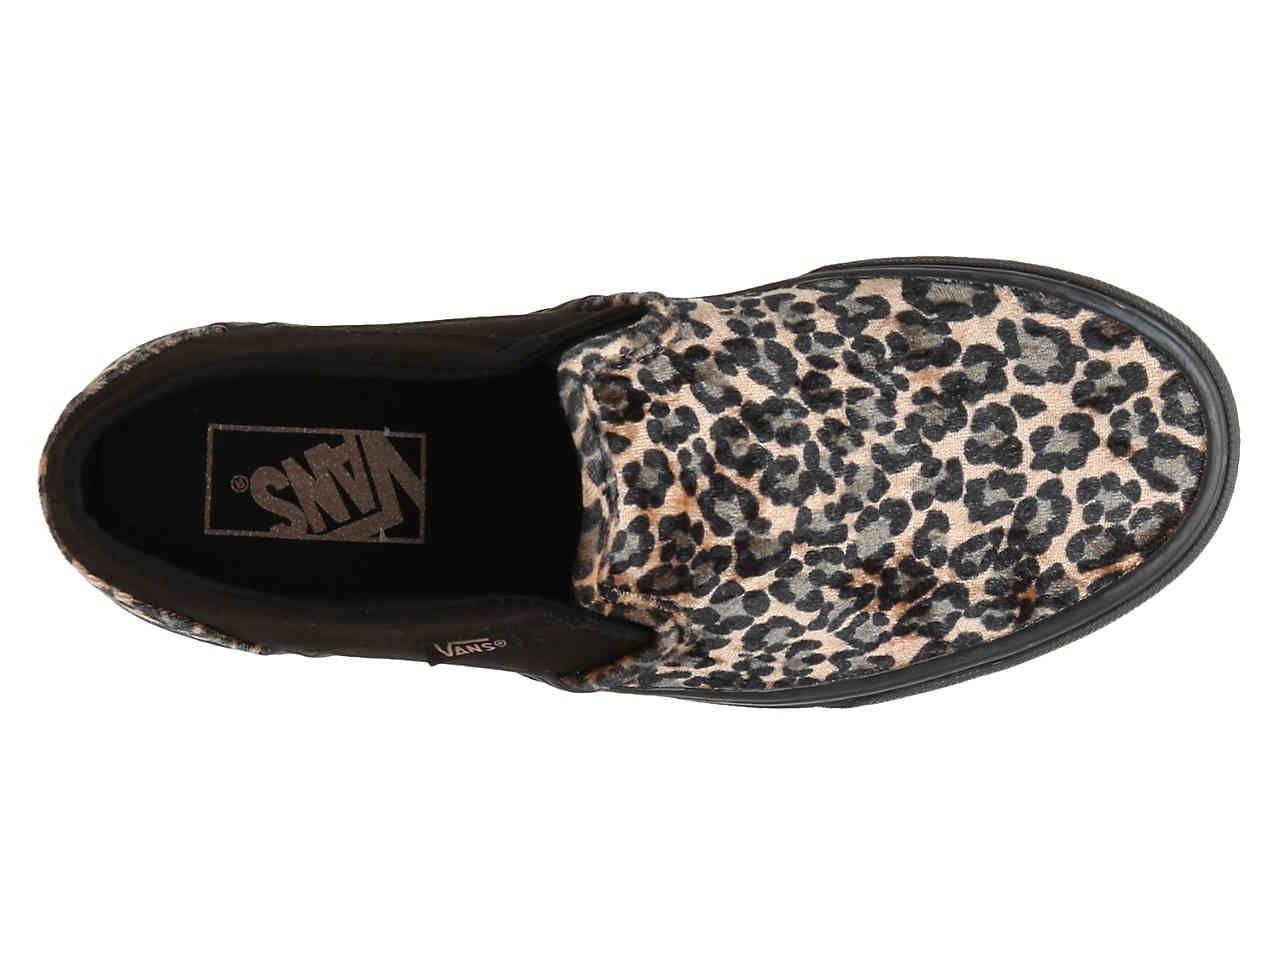 Vans Velvet Asher Slip-on Sneaker in Tan/Black Leopard Print (Black) | Lyst